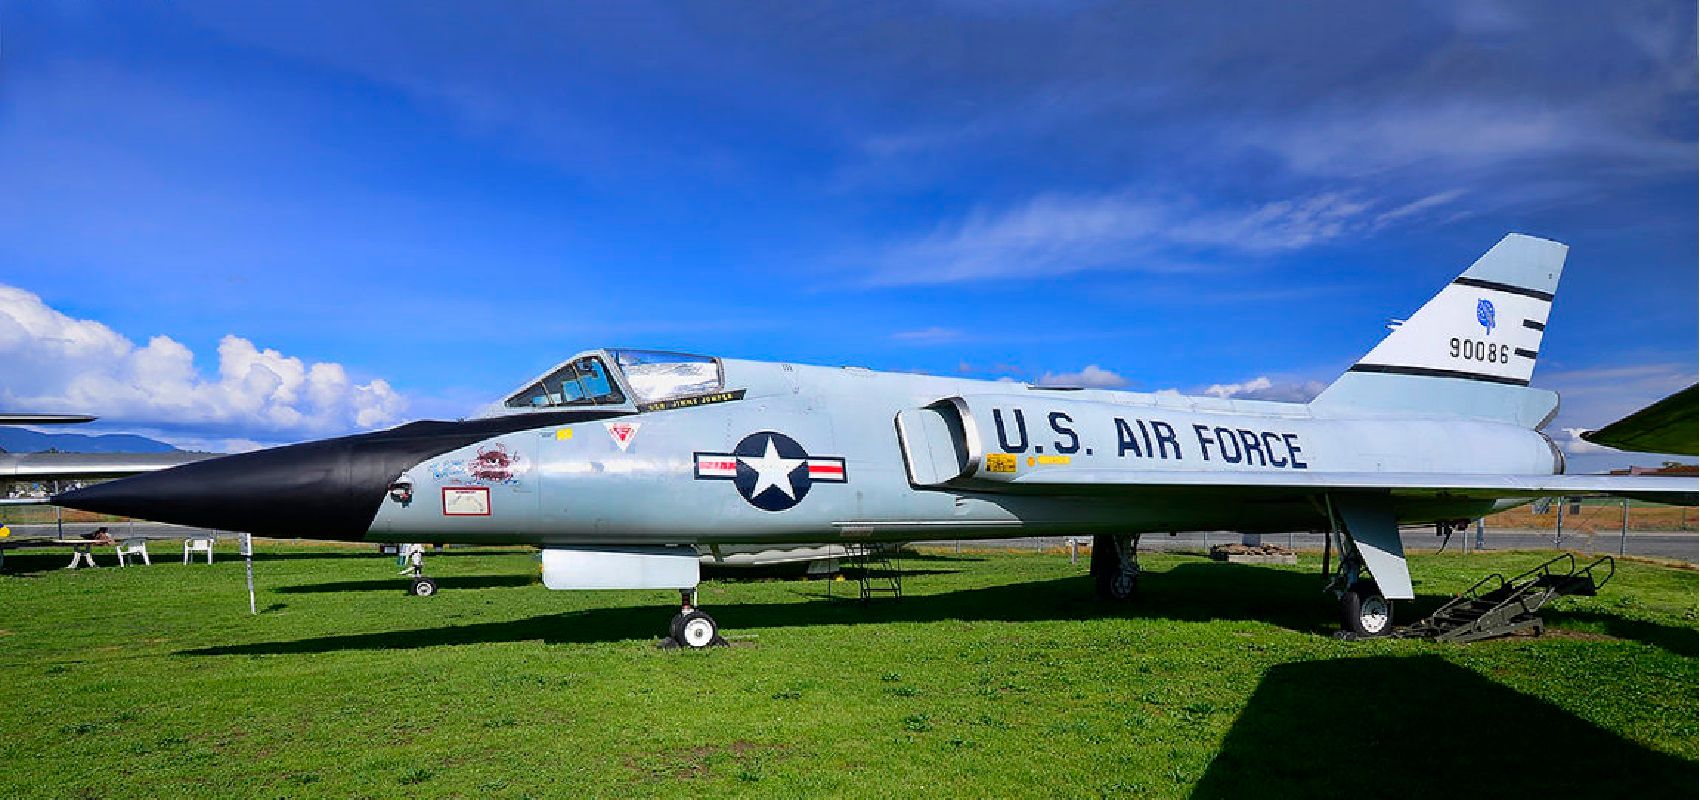 F-106 Delta Dart - Side